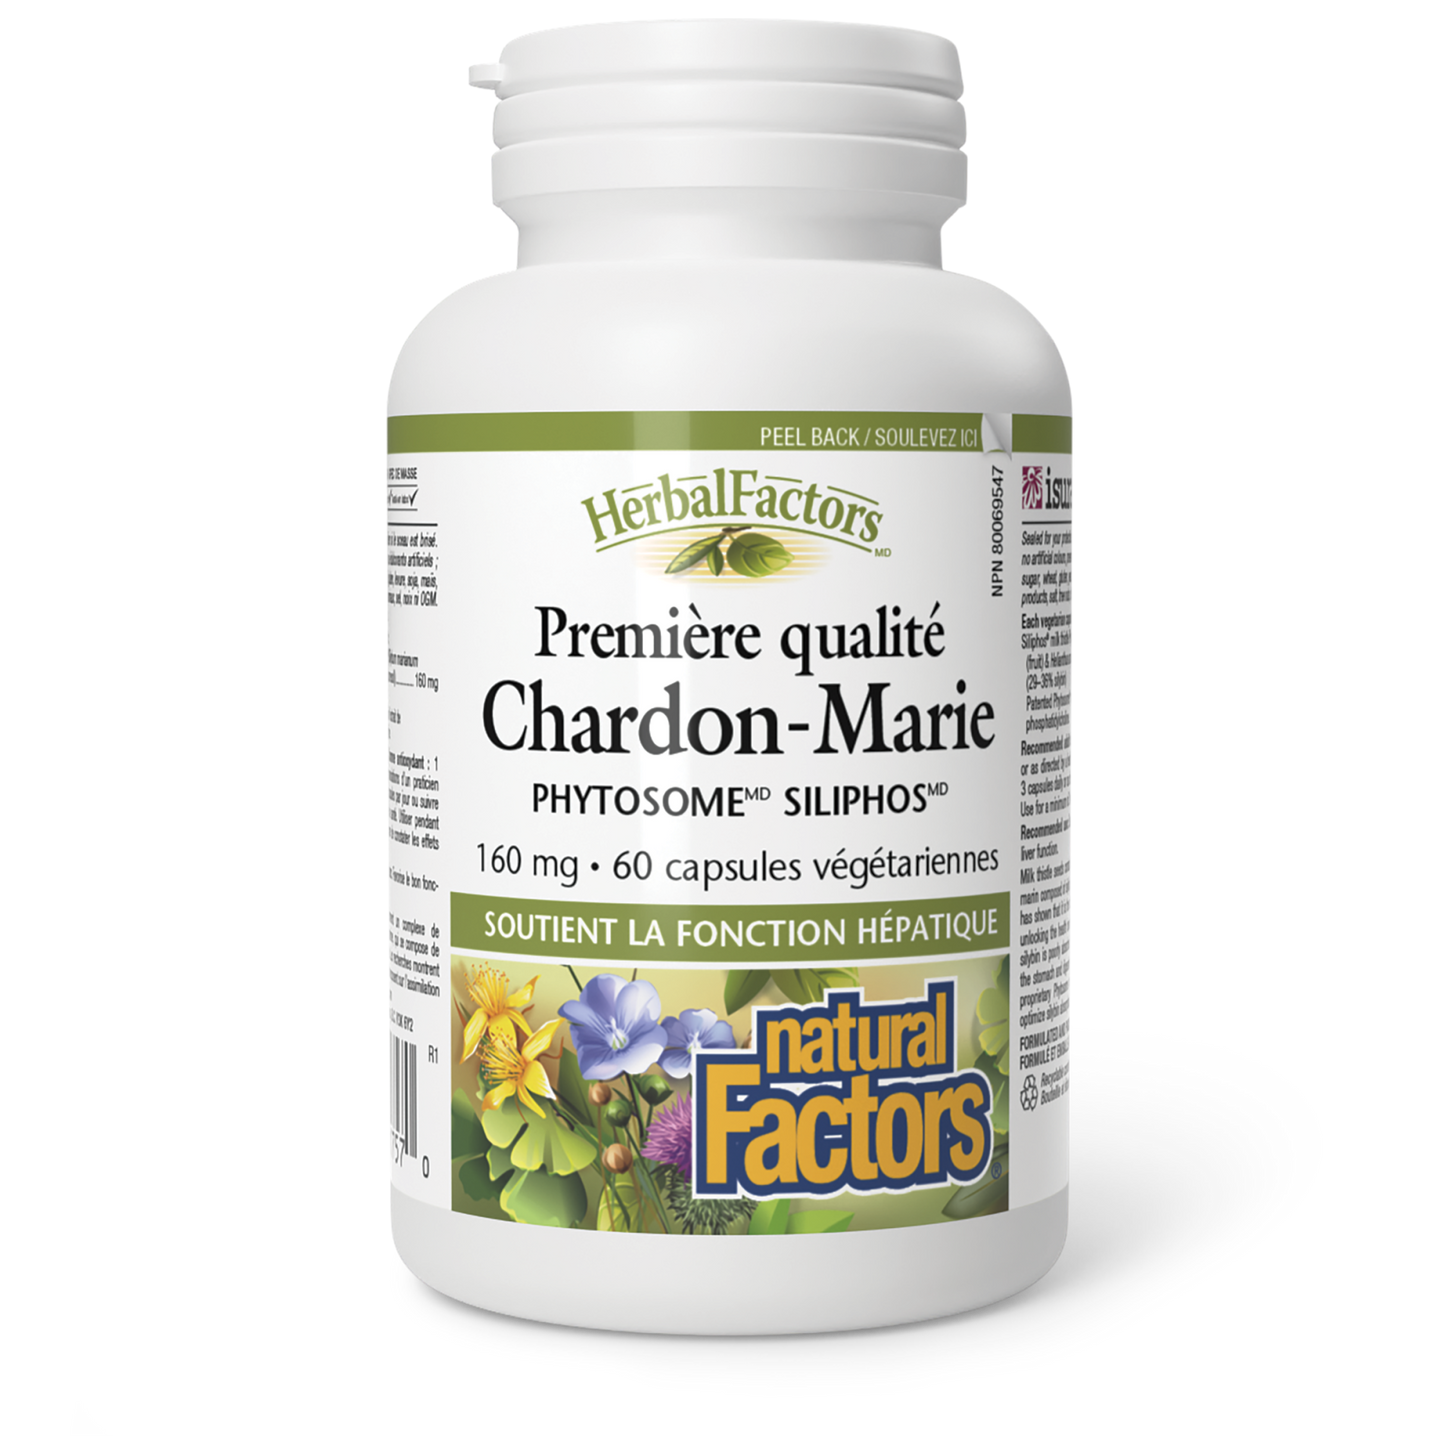 Chardon-Marie Phytosome Siliphos Première qualité 160 mg, HerbalFactors, Natural Factors|v|image|1757